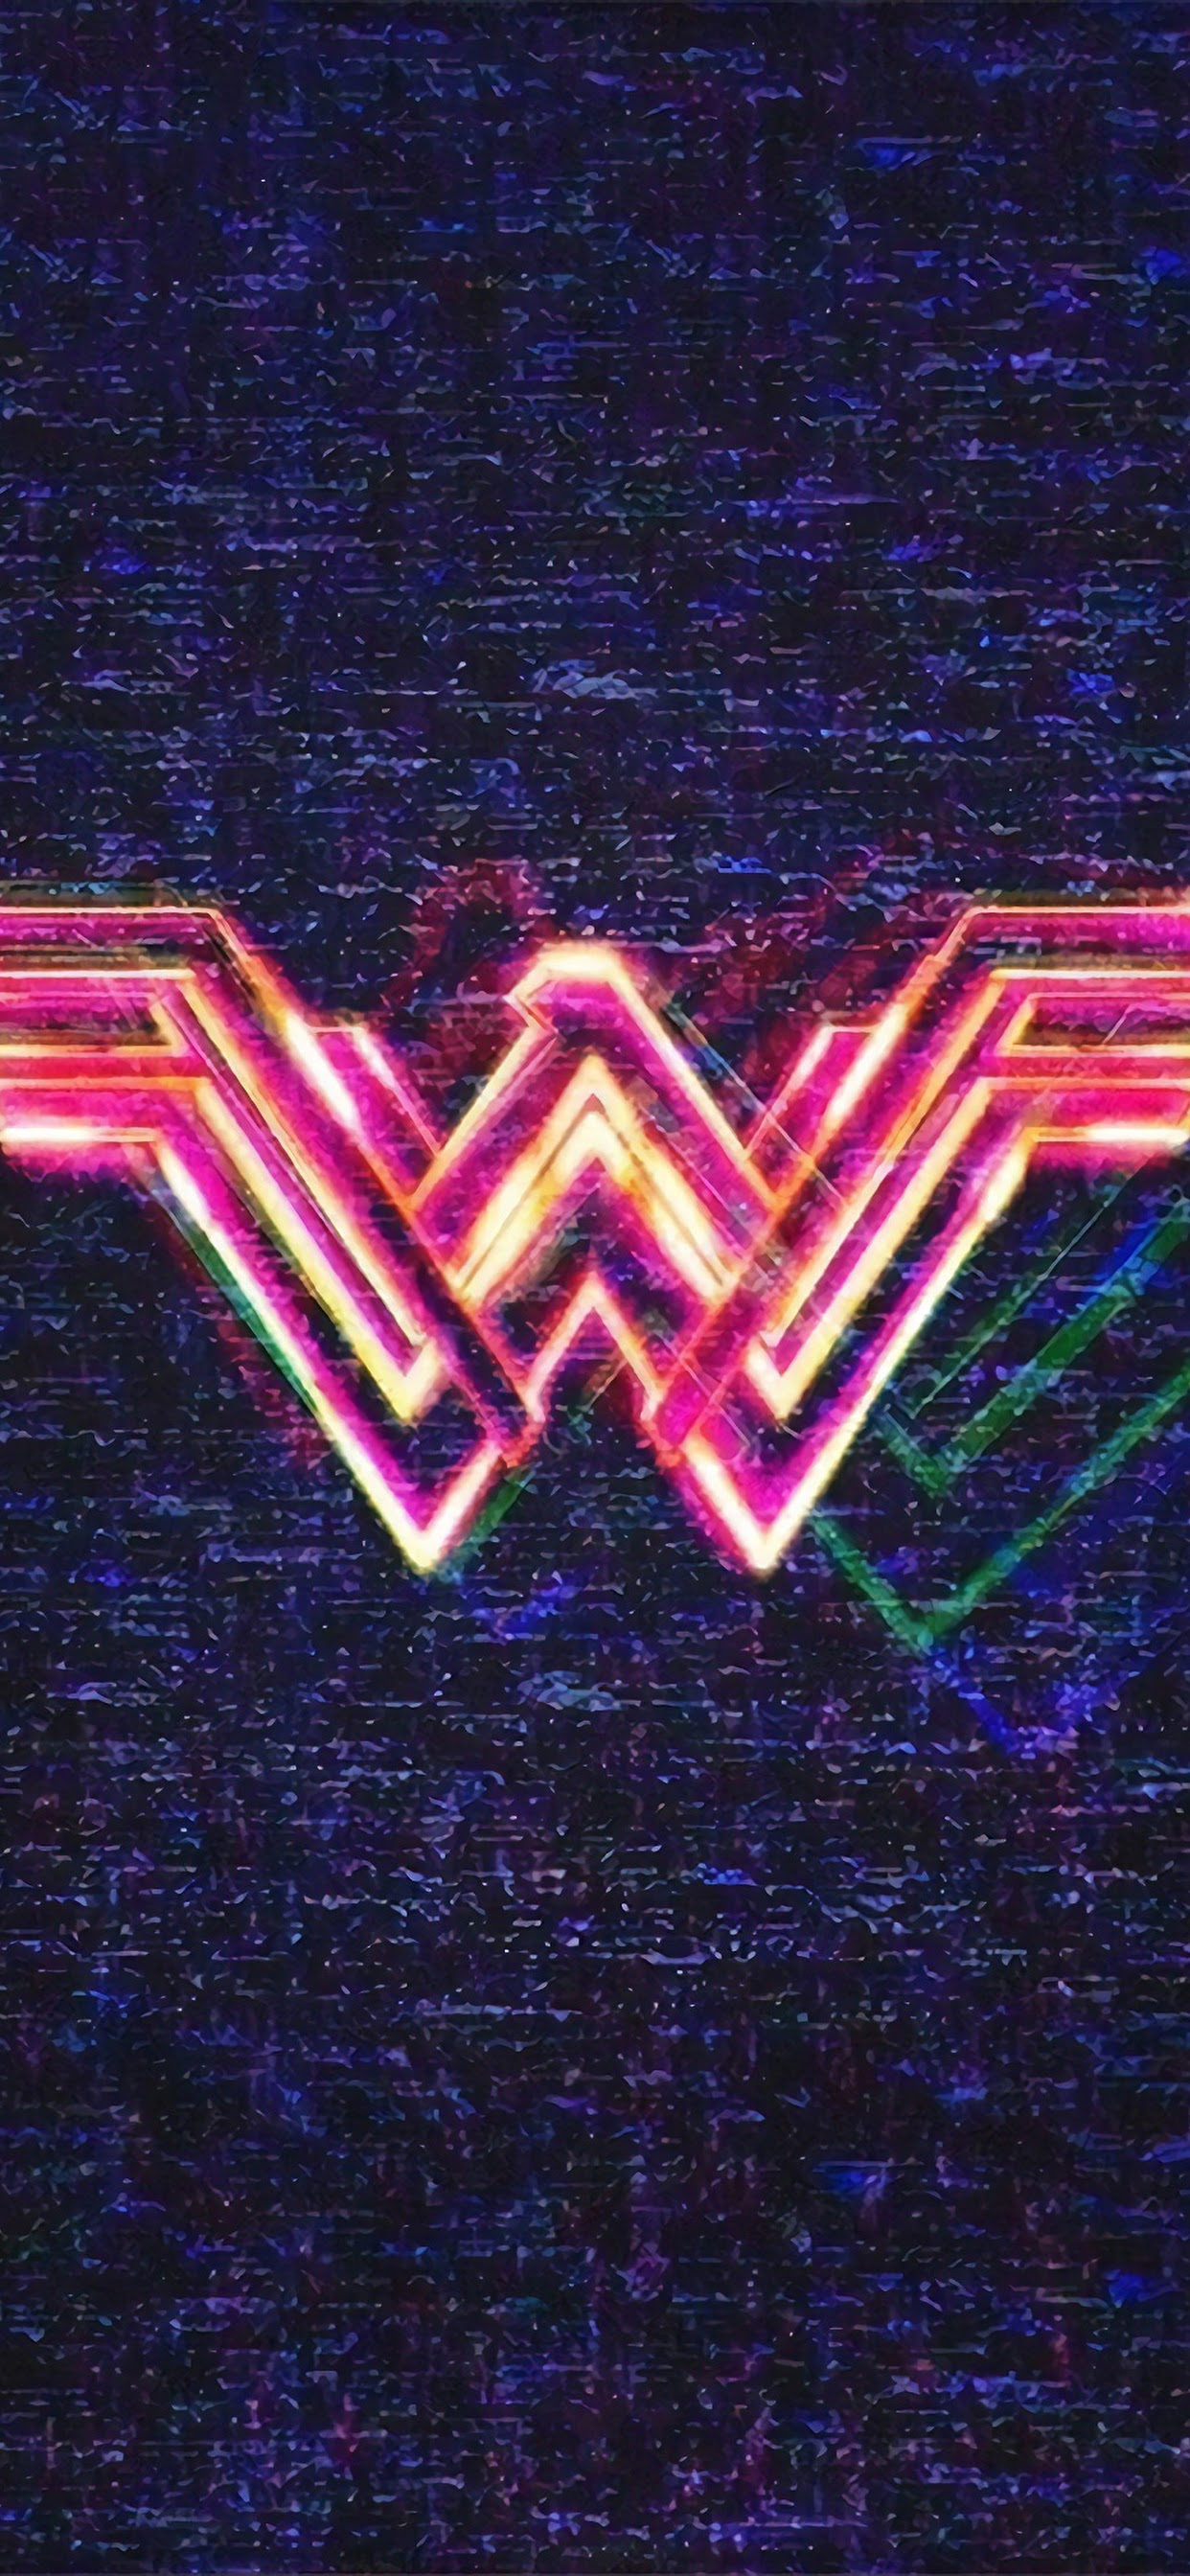 Wonder Woman 1984, Logo, 4k, - Wonder Woman 1984 Movie Logo - HD Wallpaper 